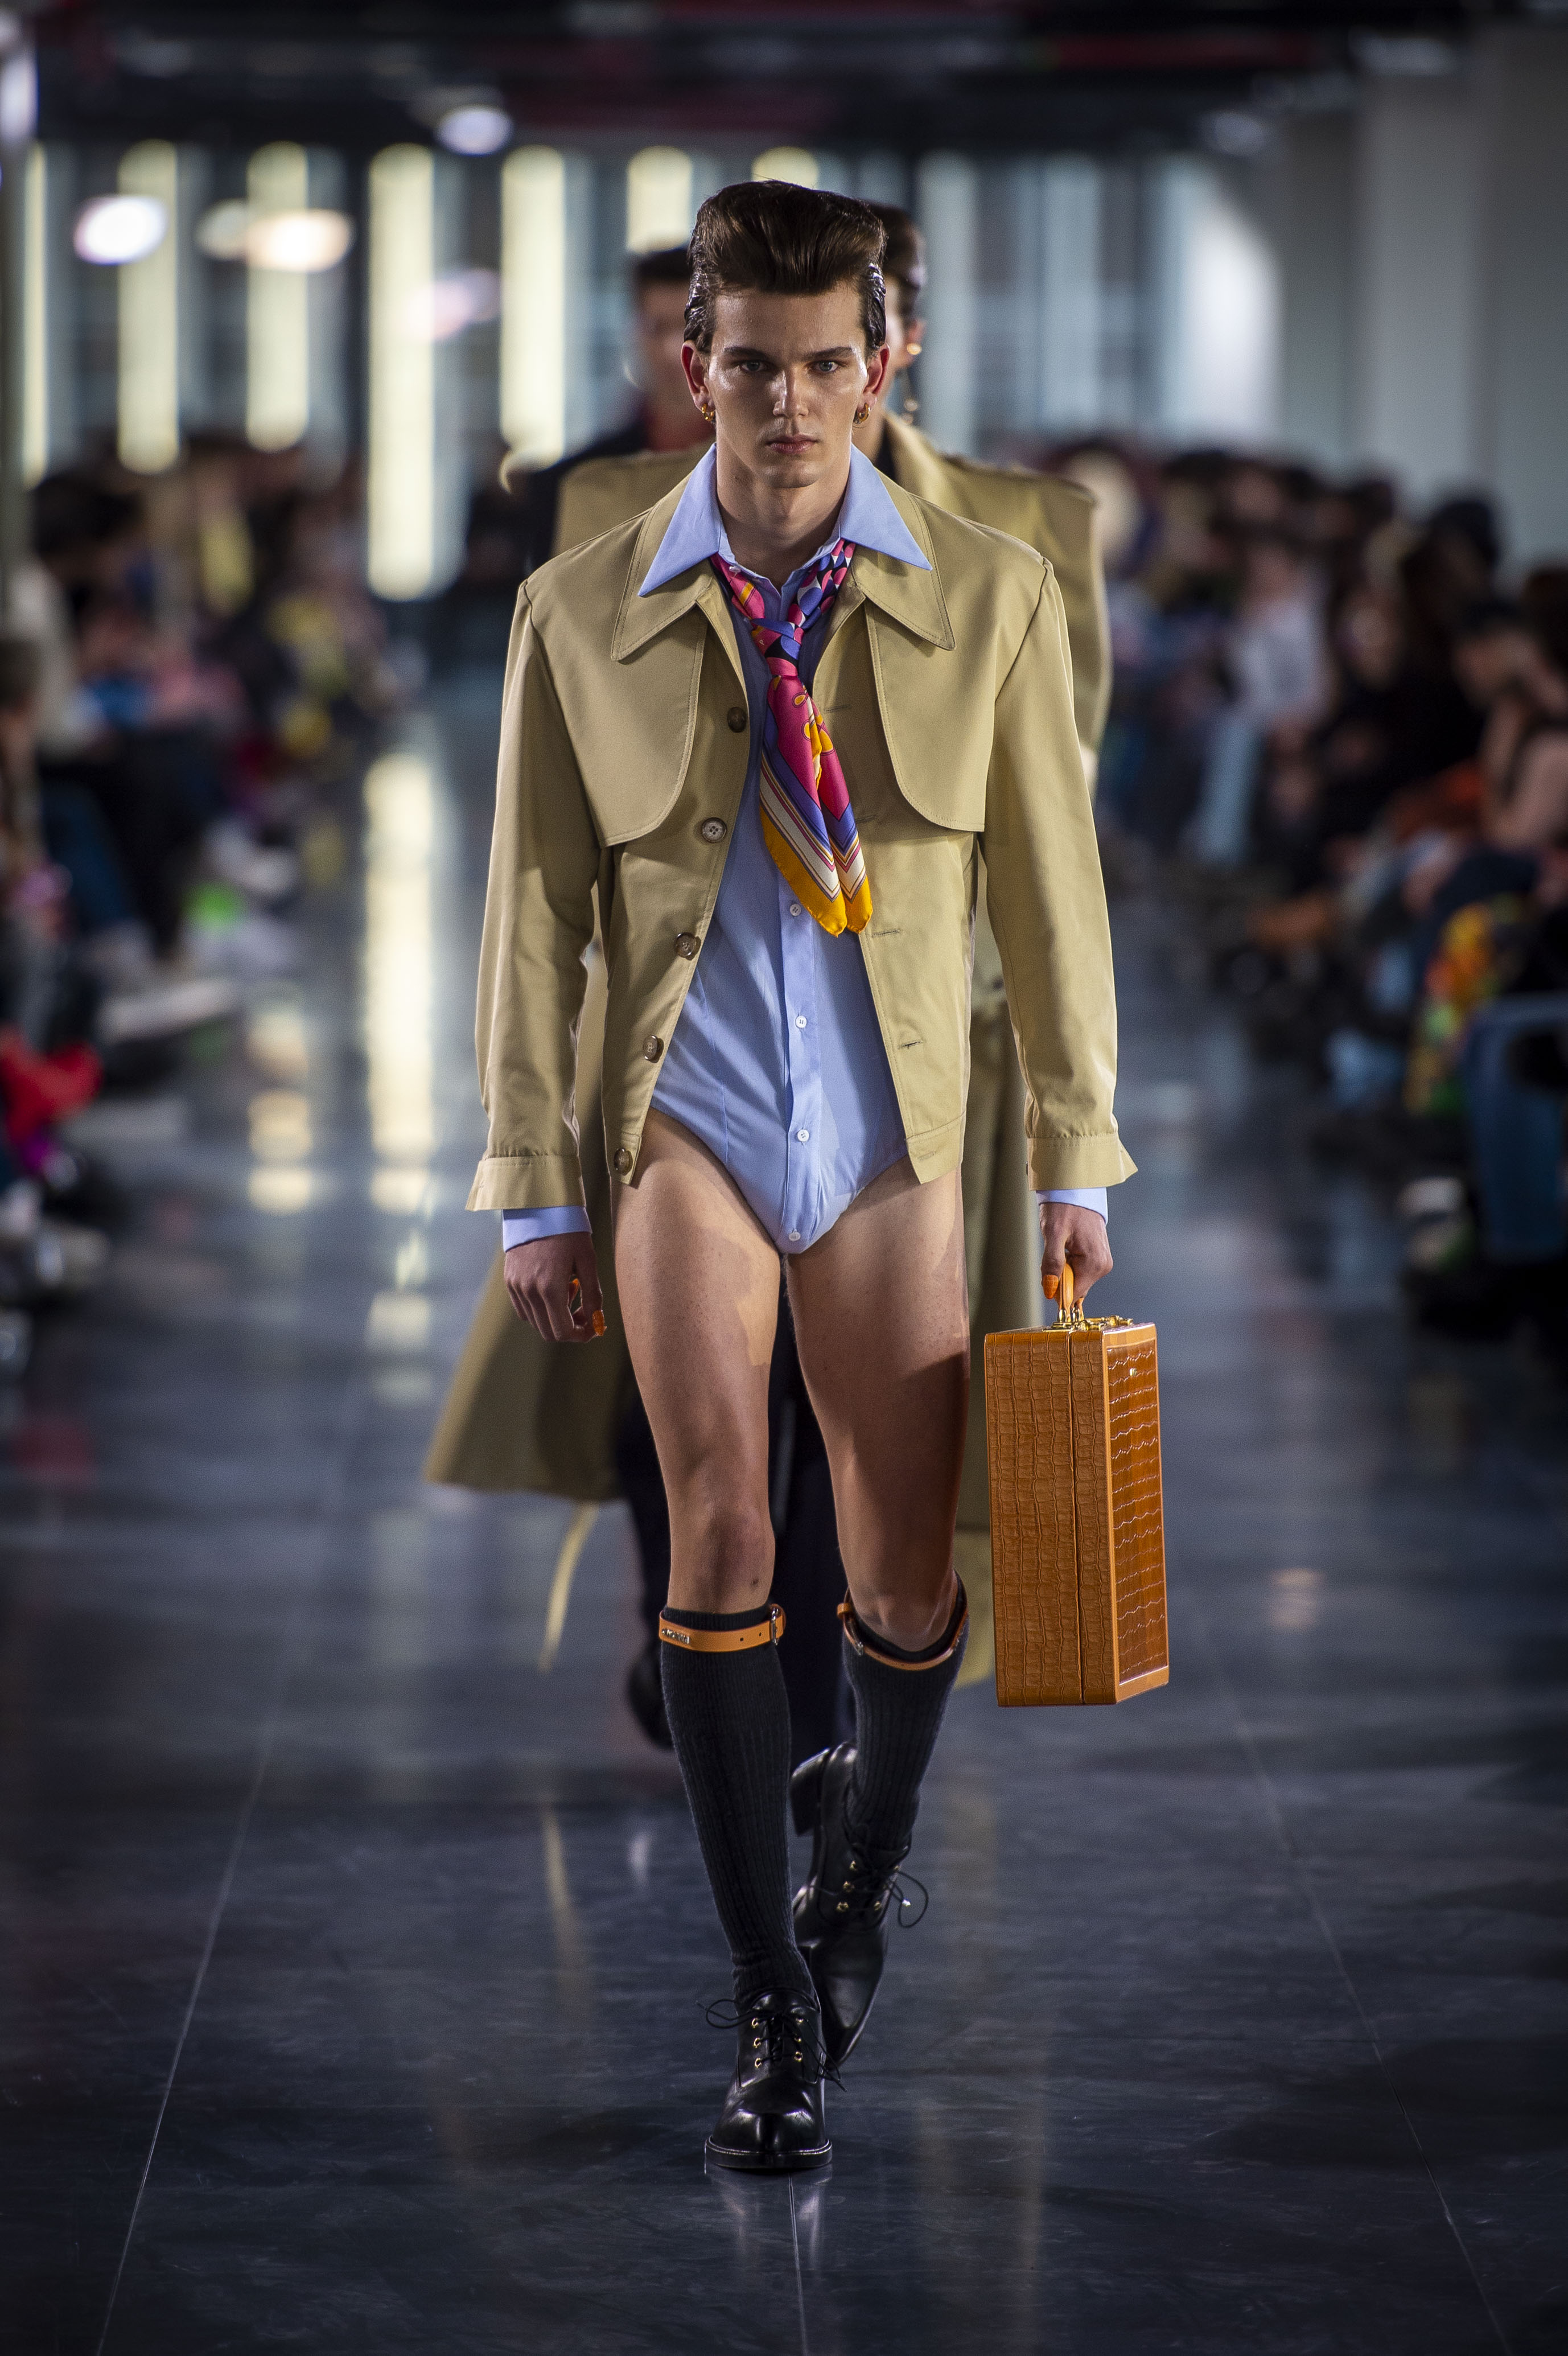 espacio Maletín Endulzar Qué, cómo y quién compra ahora? El estado de la moda masculina en España |  ICON | EL PAÍS